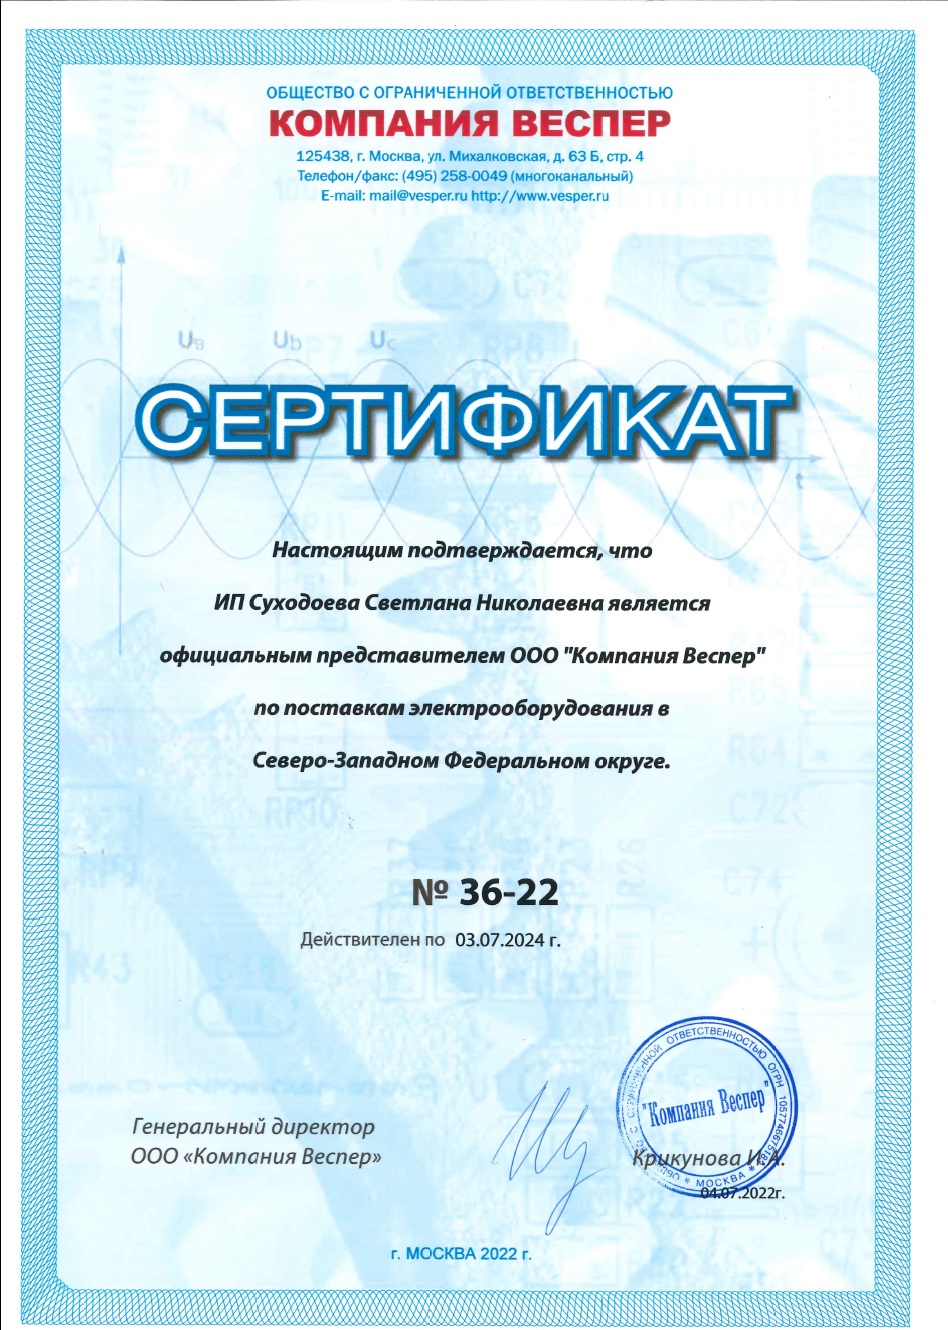 Сертификат представителя Веспер